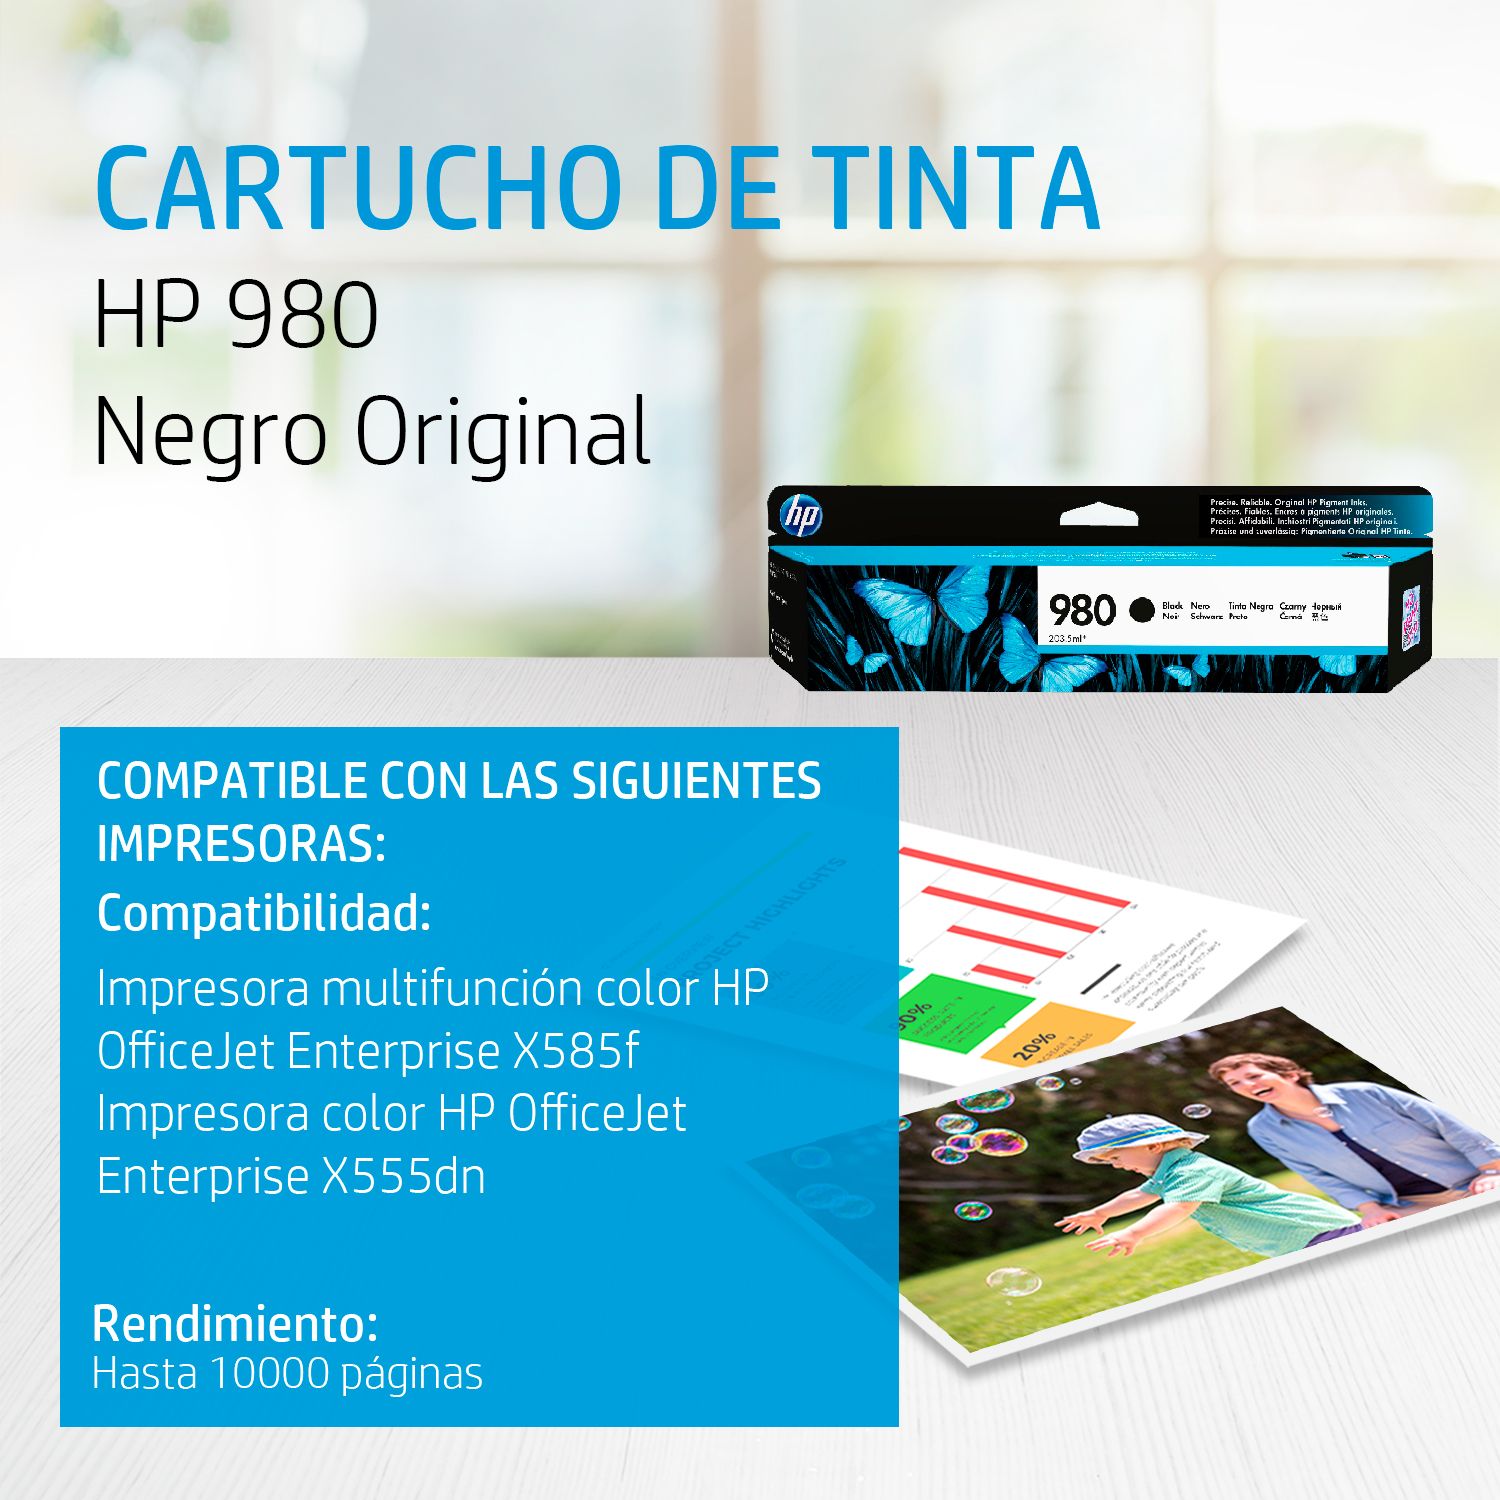 CARTUCHO DE TINTA HP 980 BLACK (D8J10A) 10,000 PAG.